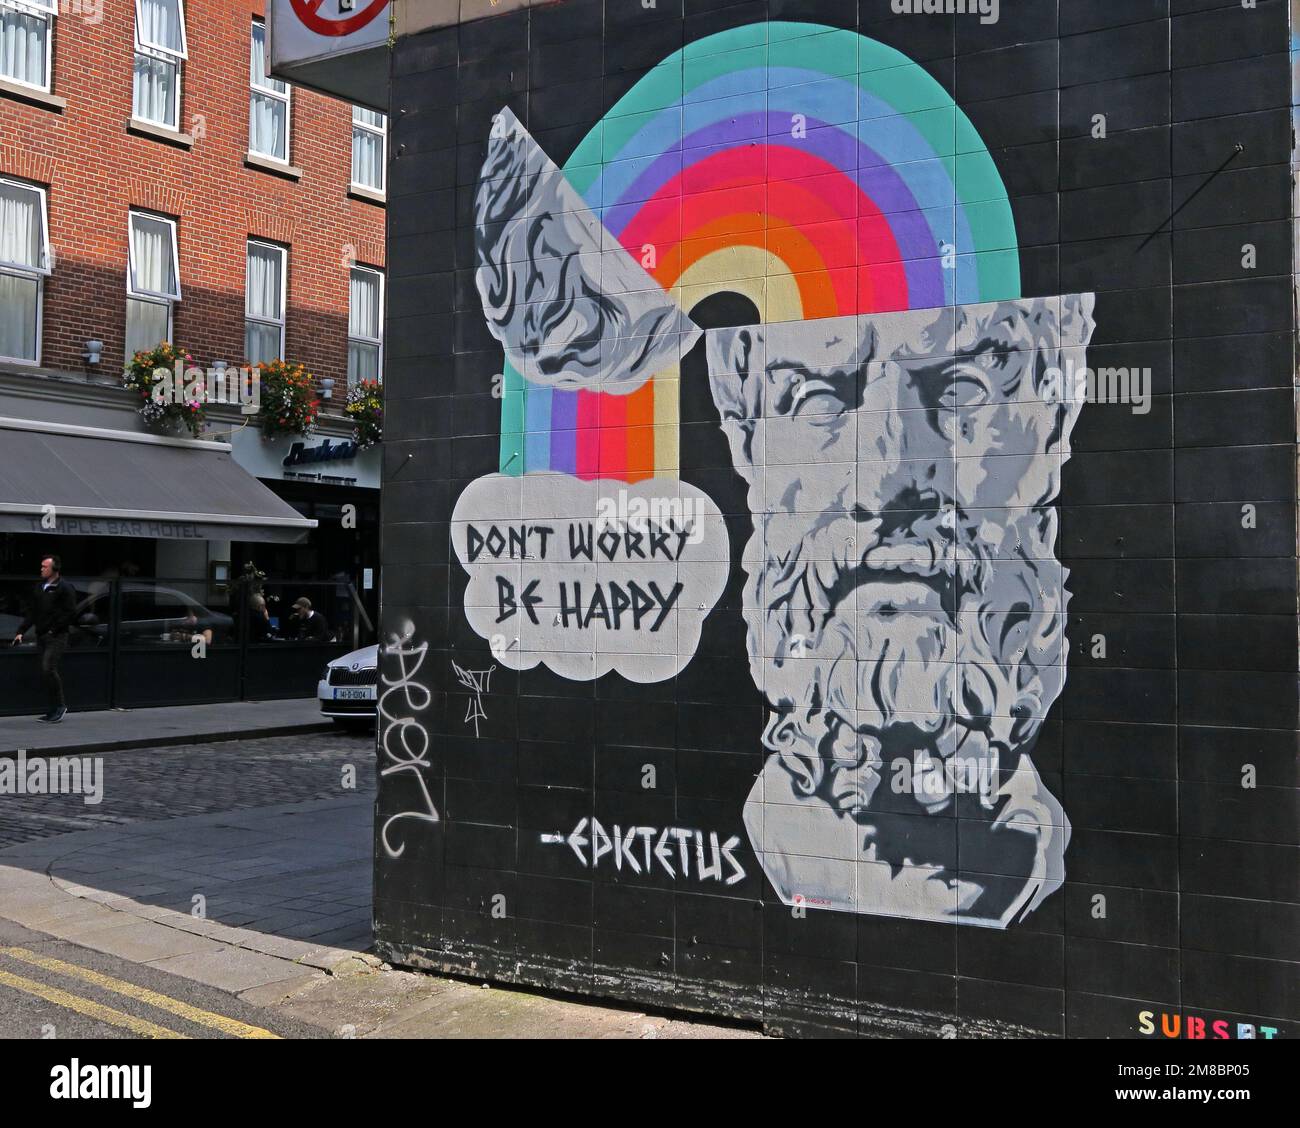 Non preoccupatevi, siate felici, una citazione di Epktetus, Epktetus, graffito su un muro di Dublino, arcobaleno che emerge dalla mente Foto Stock